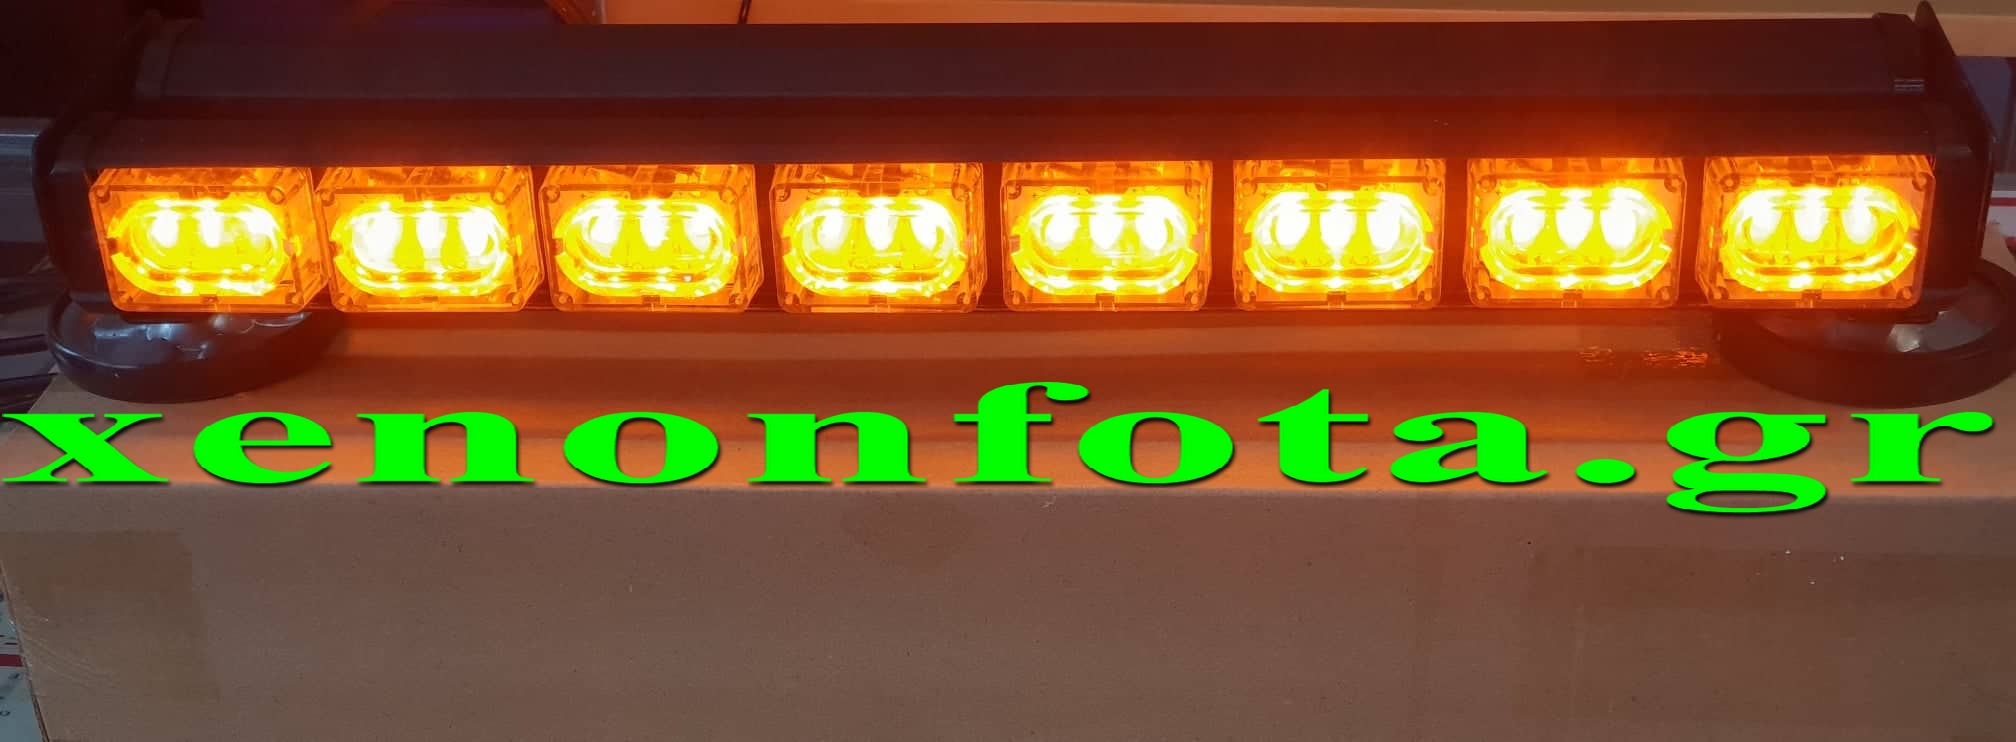 Μπάρα LED 12V-24V 144 Watt Πορτοκαλί Φωτισμός Νέας Τεχνολογίας Led Κωδικός XF719 Τιμή: 120 ευρώ